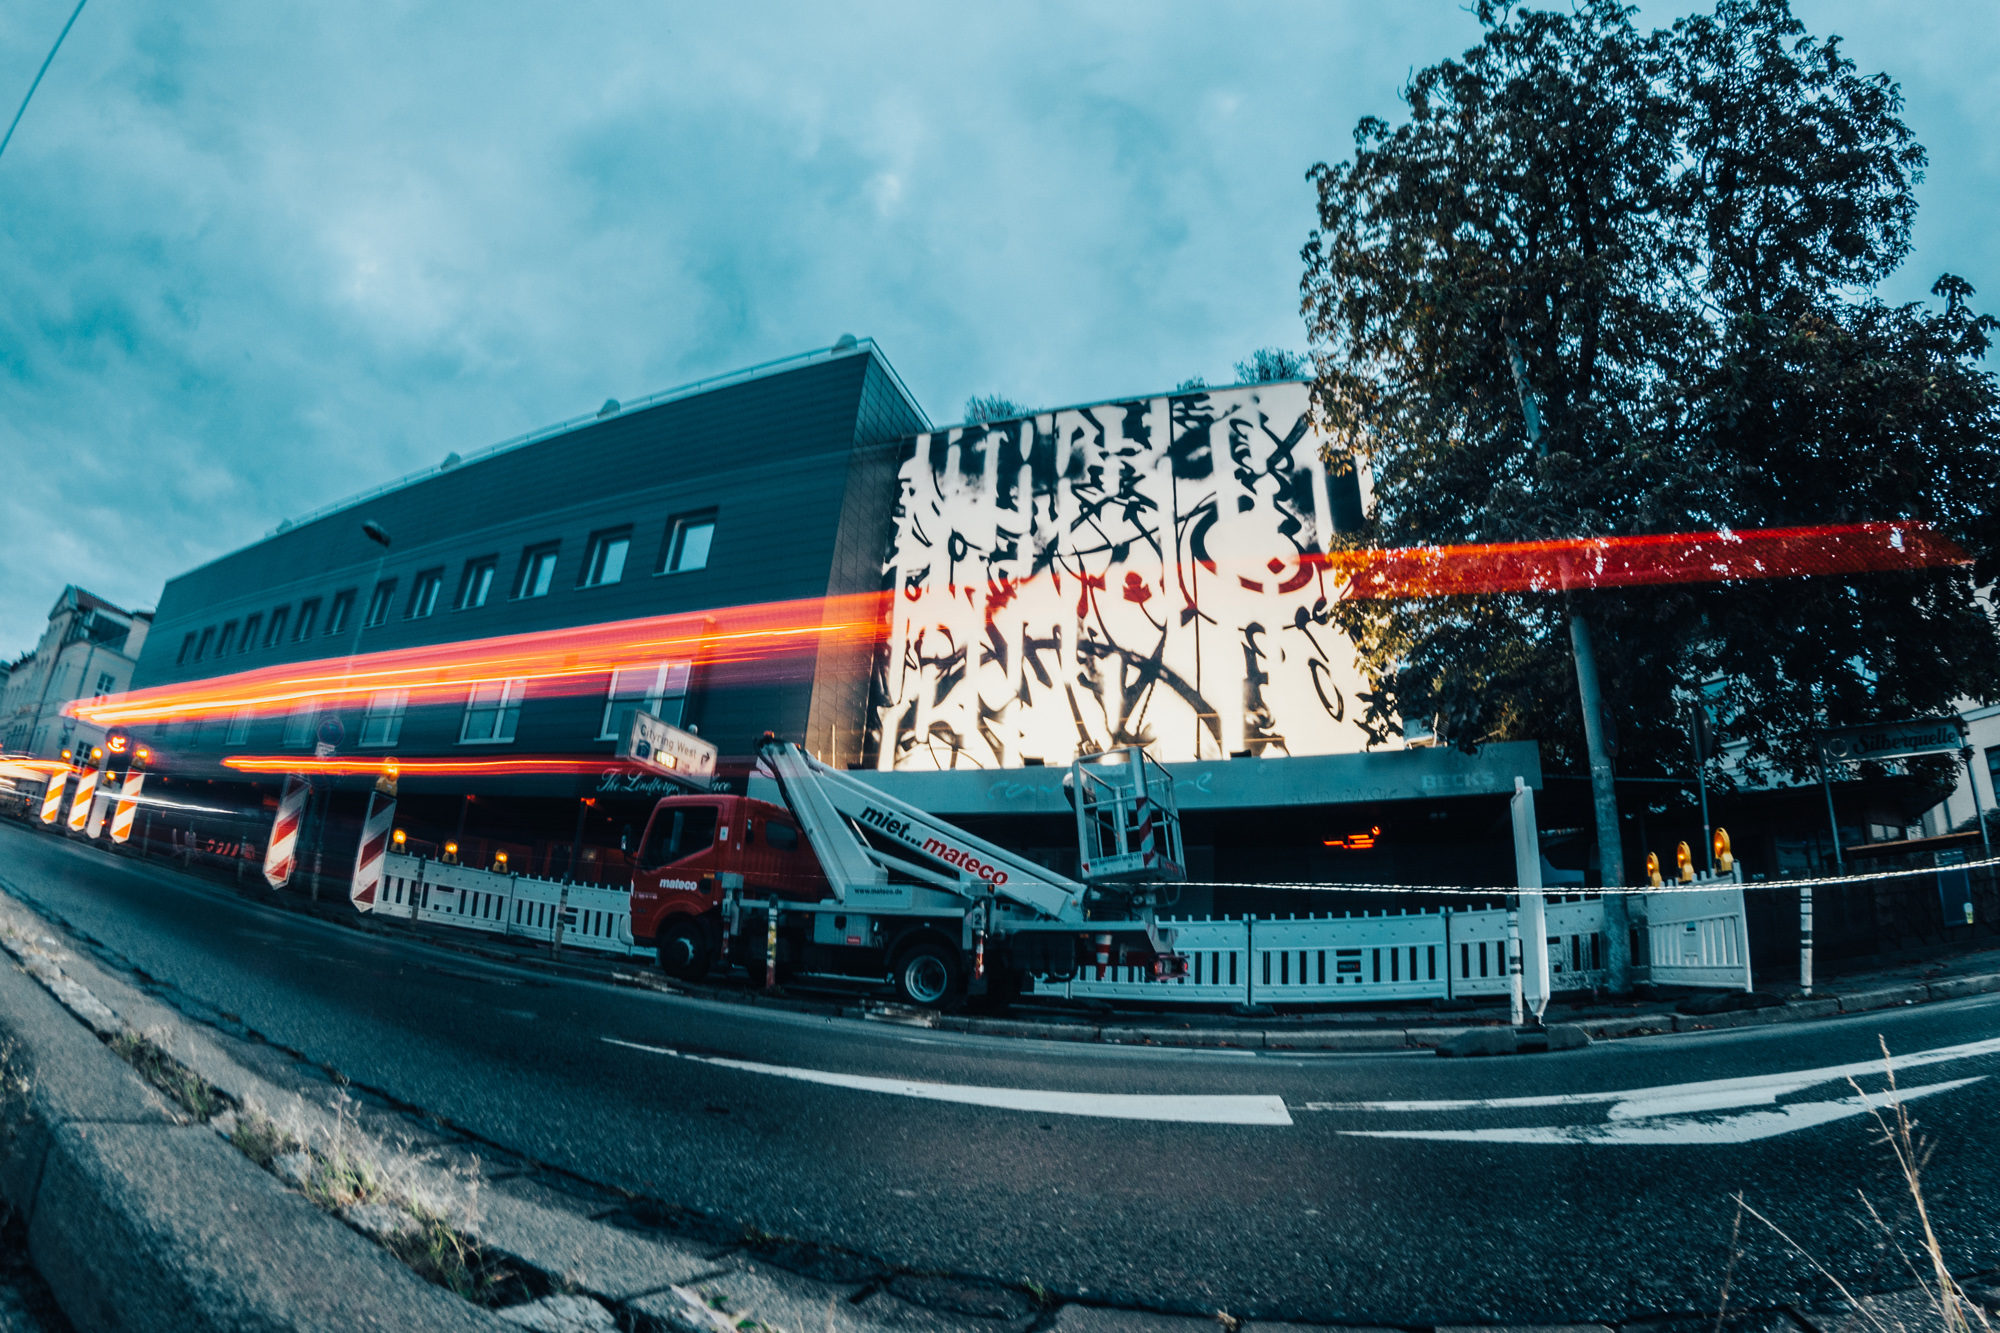 Bei der neuen Stadtführung „Von GROSS FORM ART bis Rizzi-Haus“ erfahren die Teilnehmerinnen und Teilnehmer mehr über Street-Art in der Braunschweiger Innenstadt.